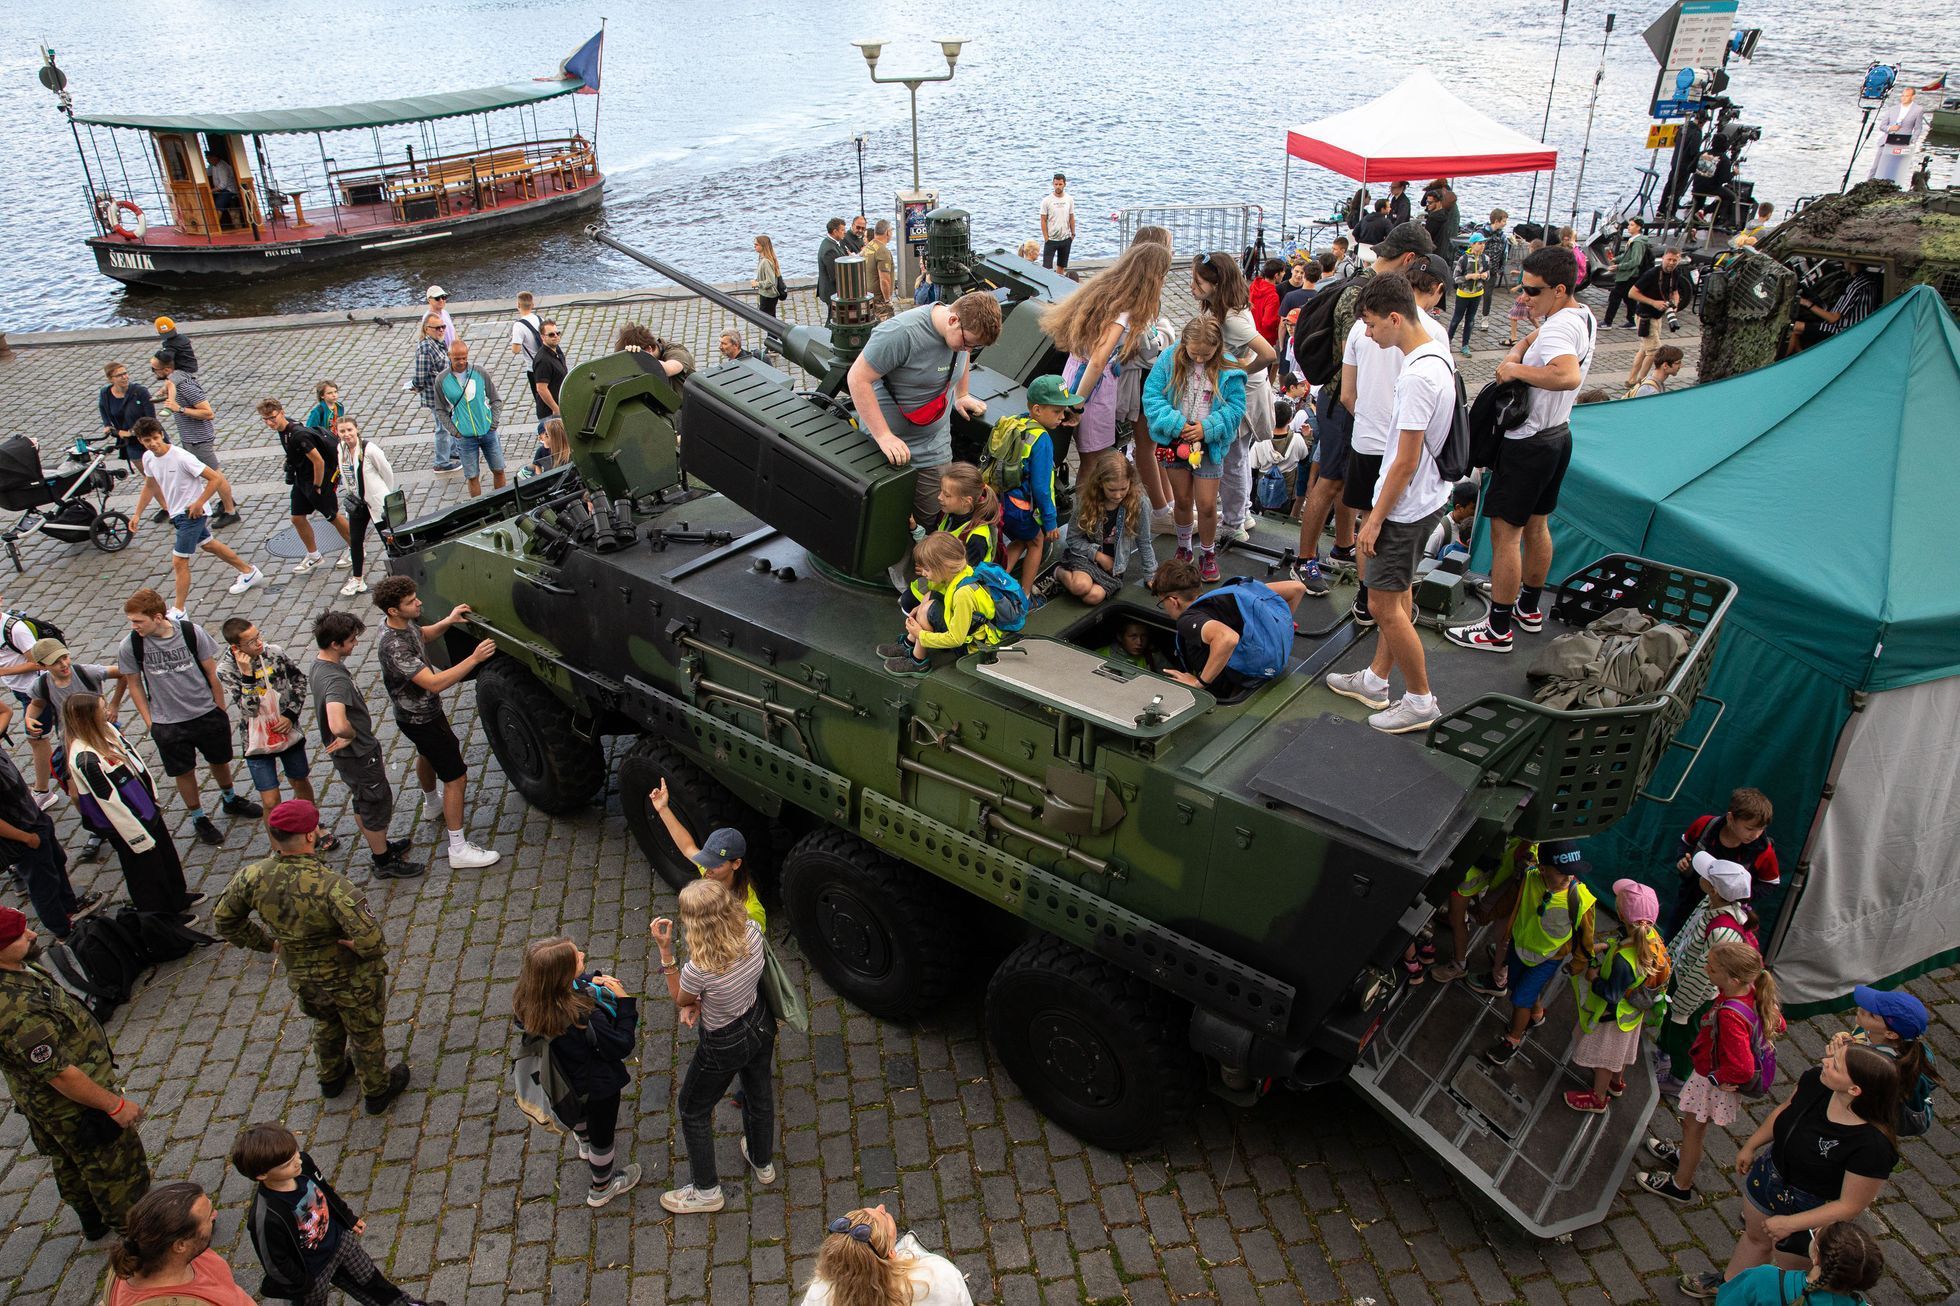 Armáda na Náplavce v Praze, 30 let výročí, vojáci, cvičení, děti, Náplavka